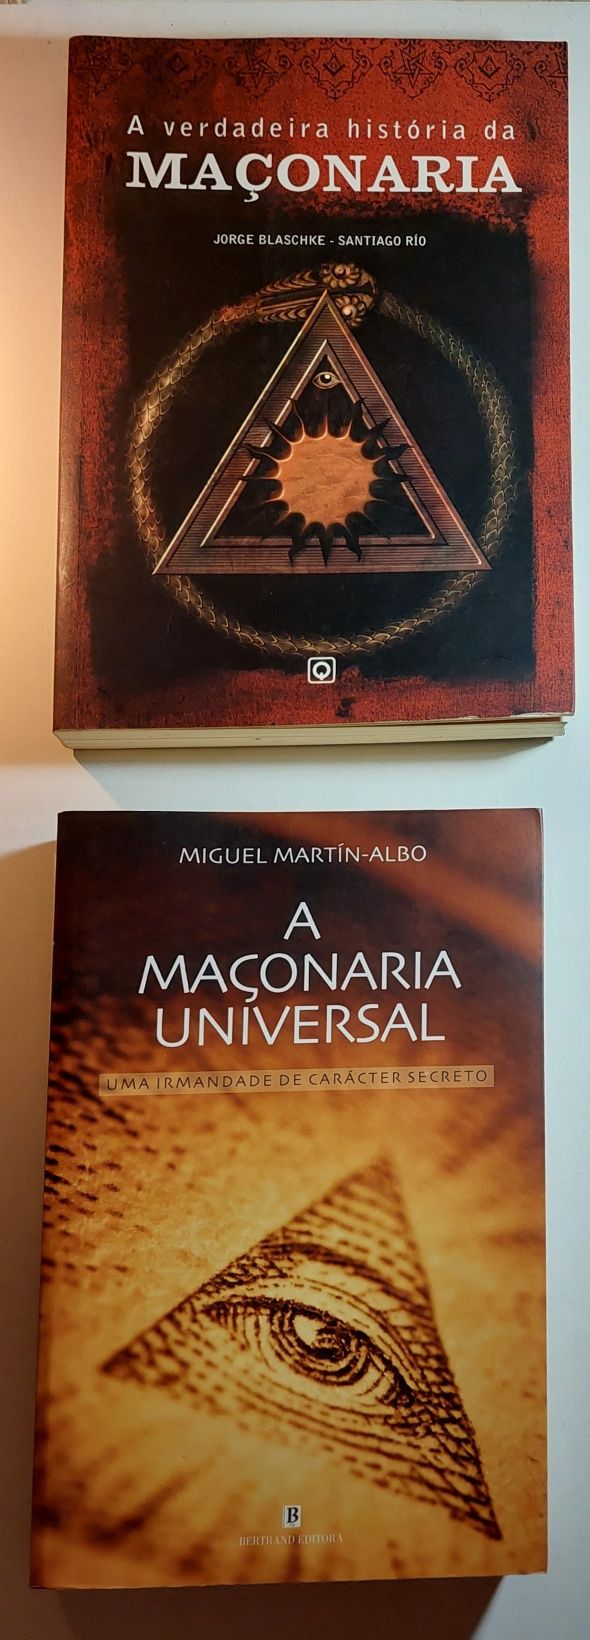 Livros da Maçonaria Portuguesa e Internacional | Ver descrição e fotos